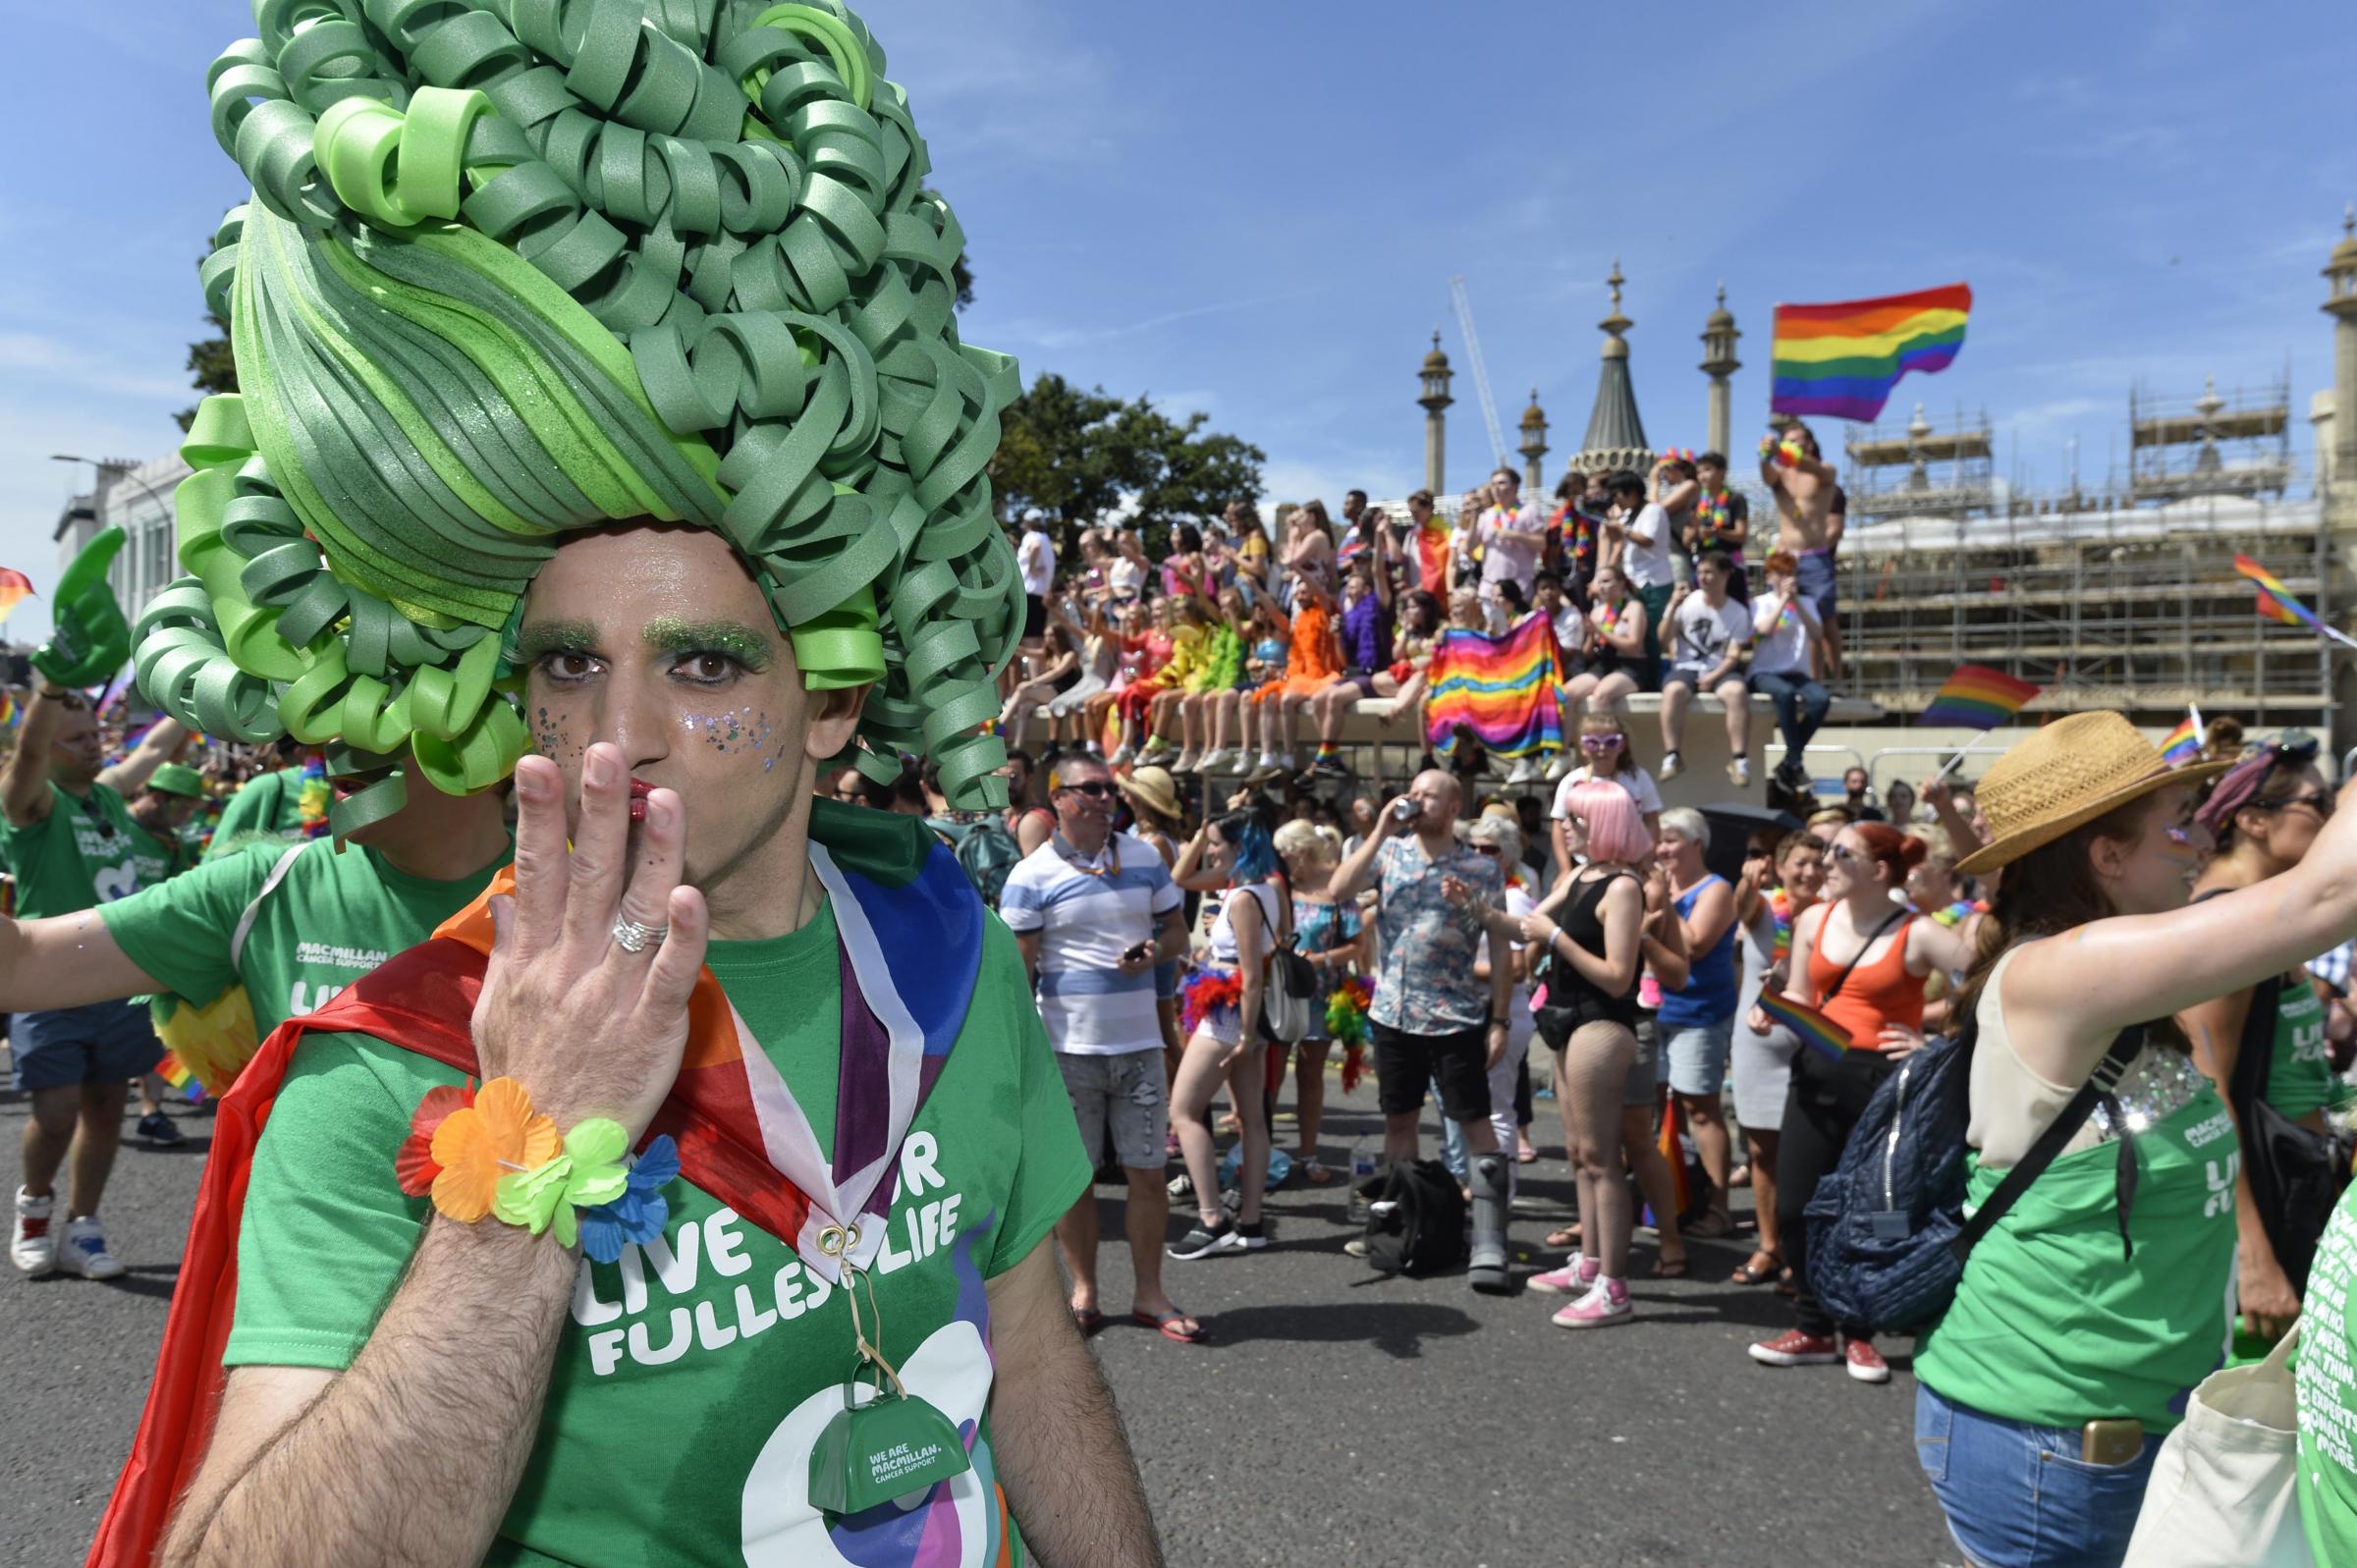 Brighton Pride 2018. Picture: Terry Applin.